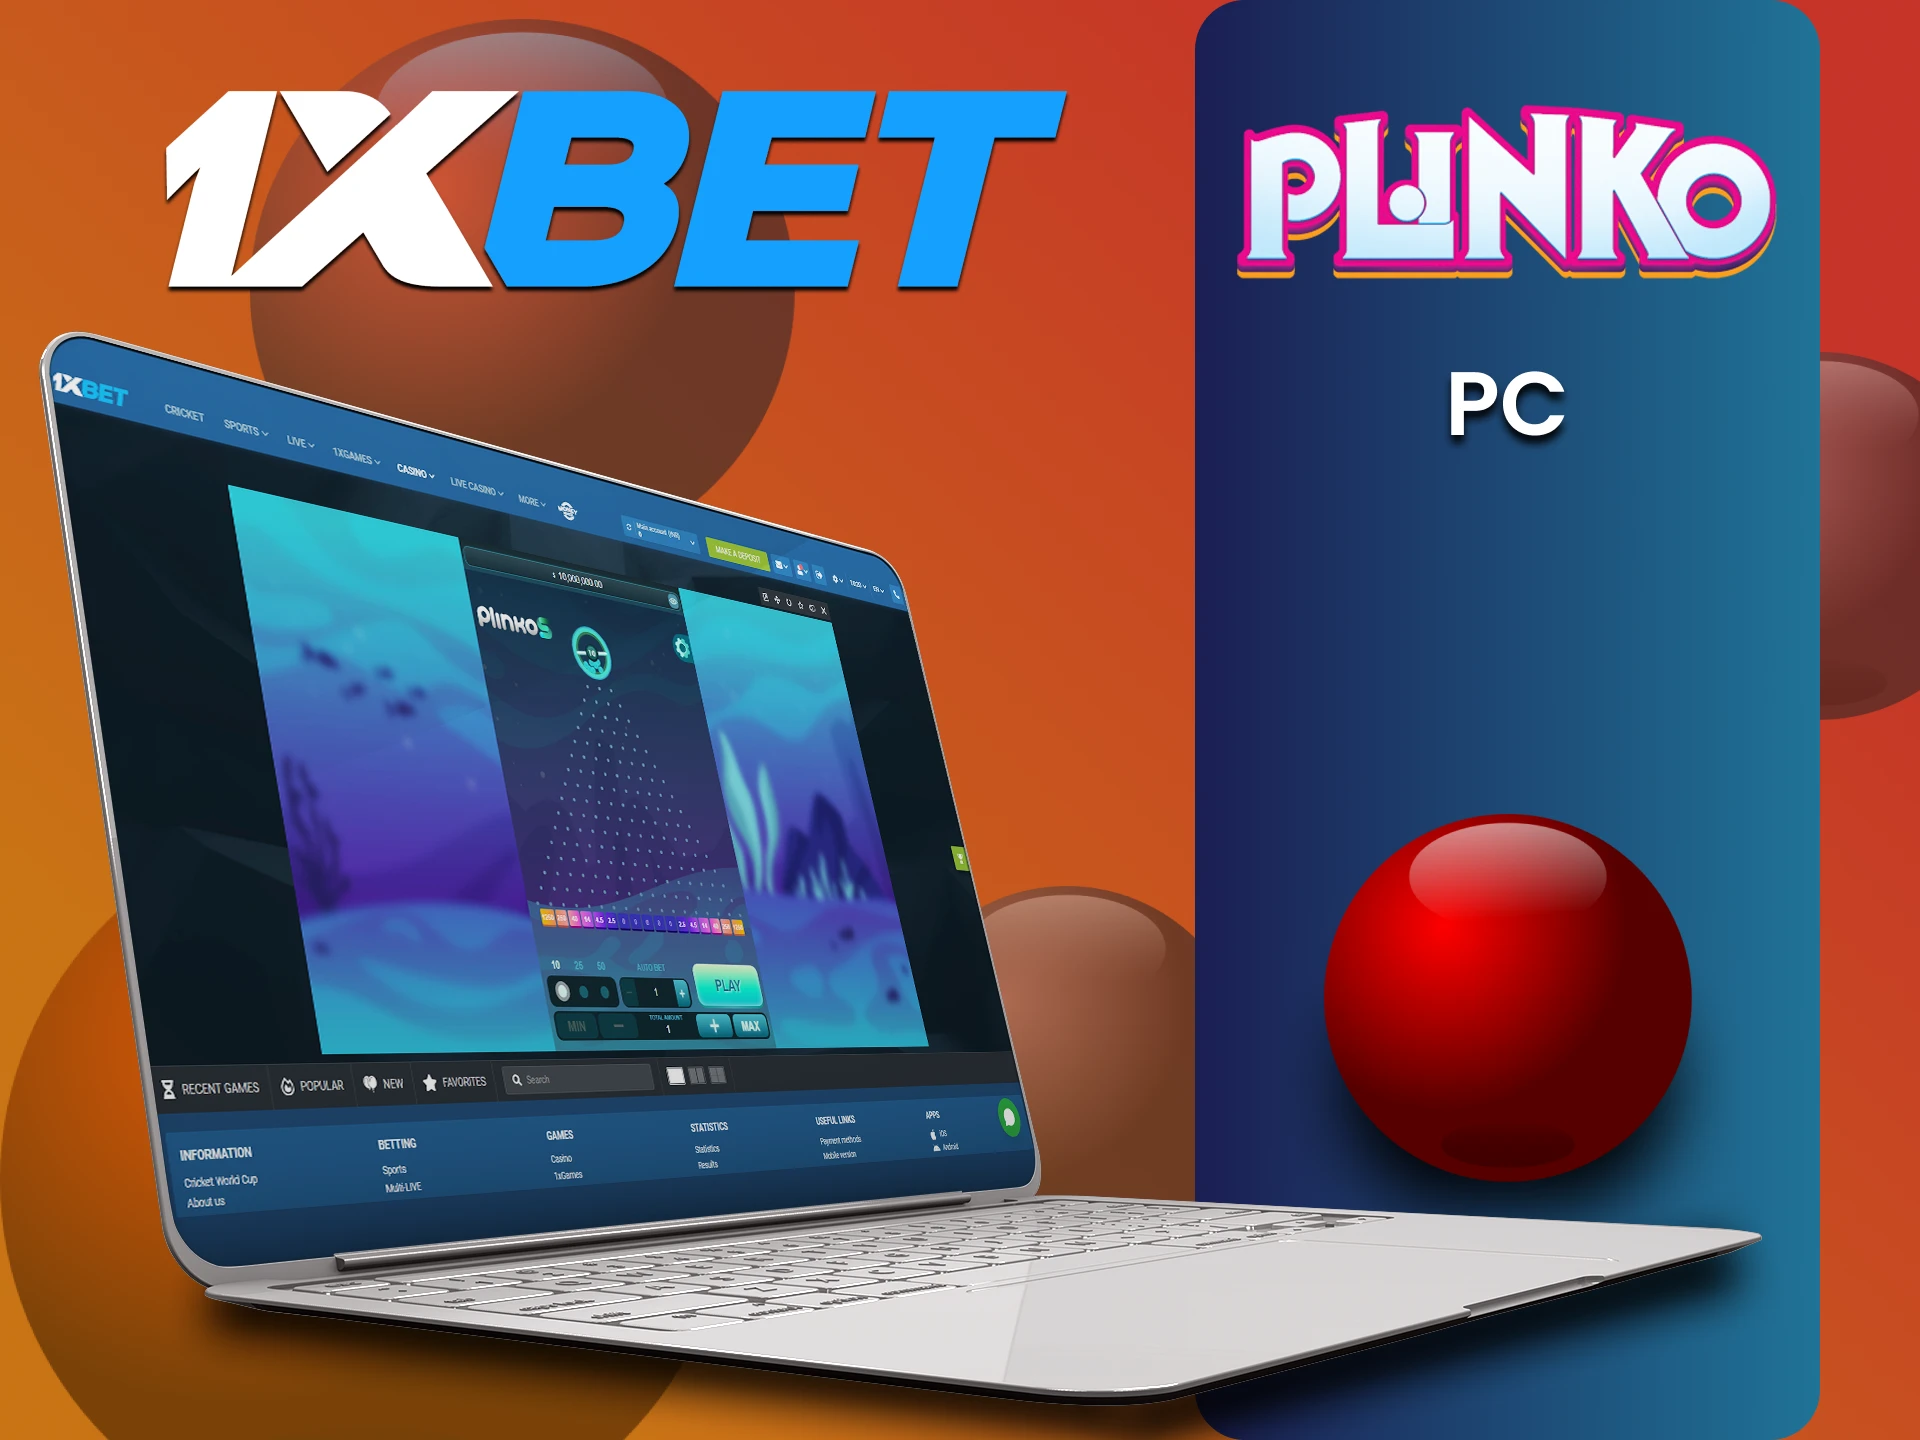 Play Plinko via PC at 1xbet.